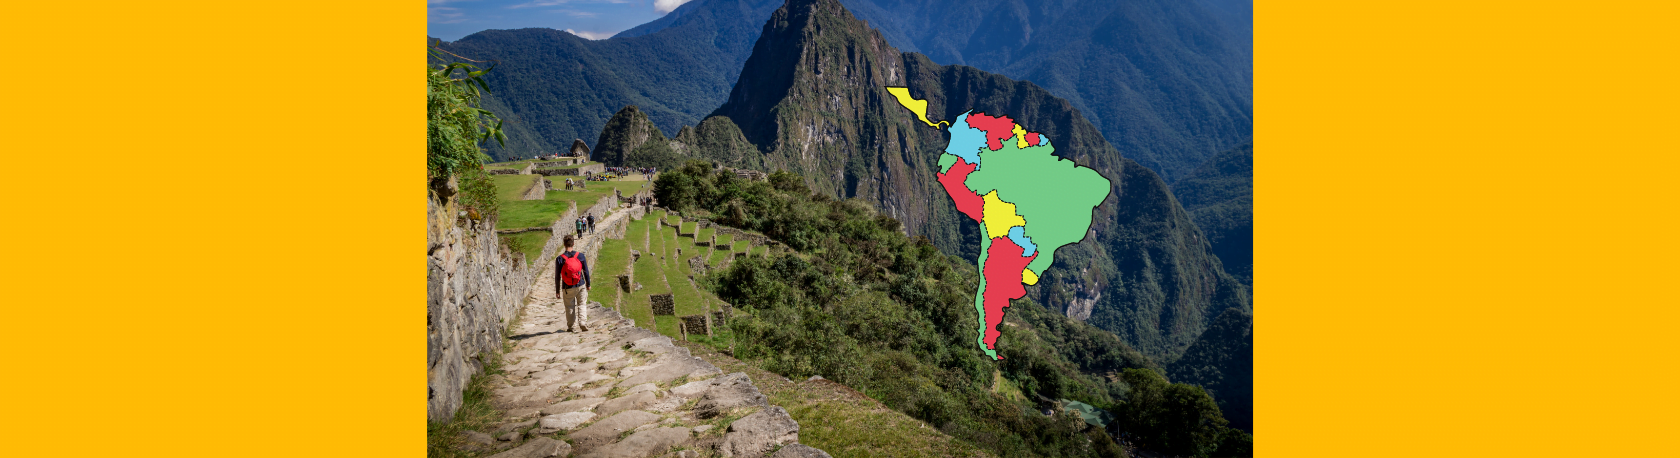 Easy Podcast: El camino del Inca que unió a todo un imperio - Easy Español